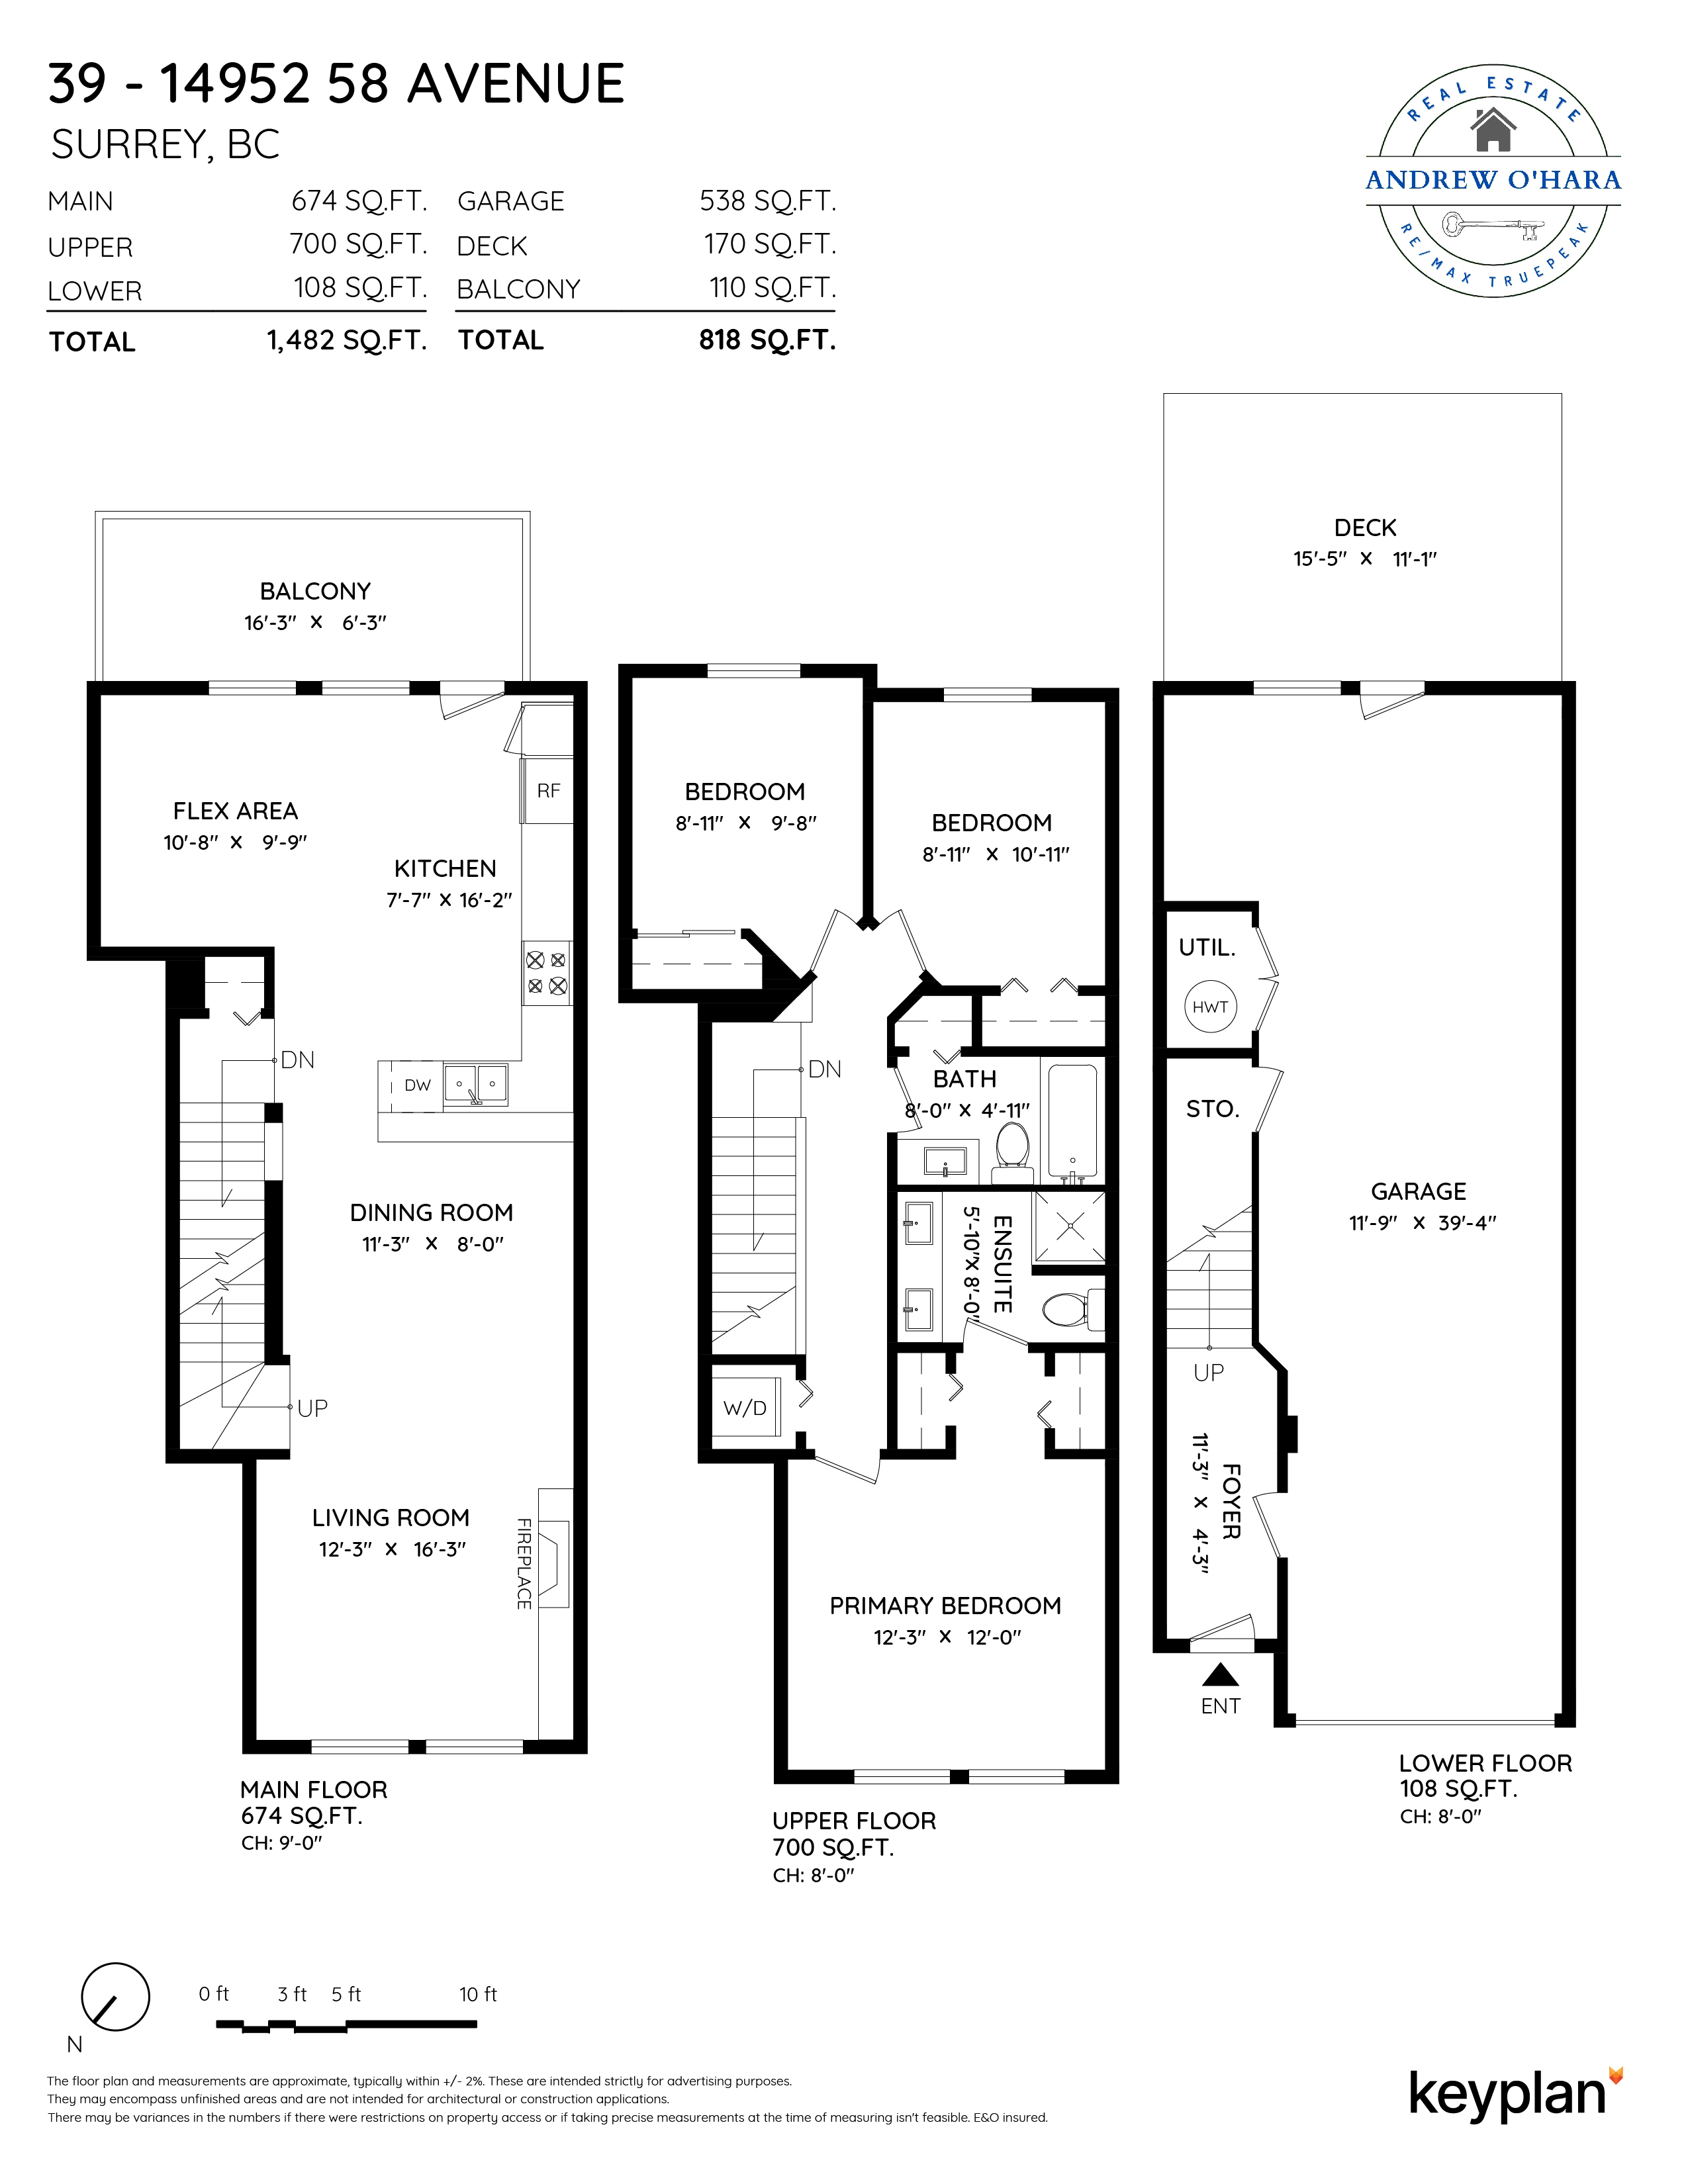 Andrew O’Hara - Unit 39 - 14952 58 Avenue, Surrey, BC, Canada | Floor Plan 1